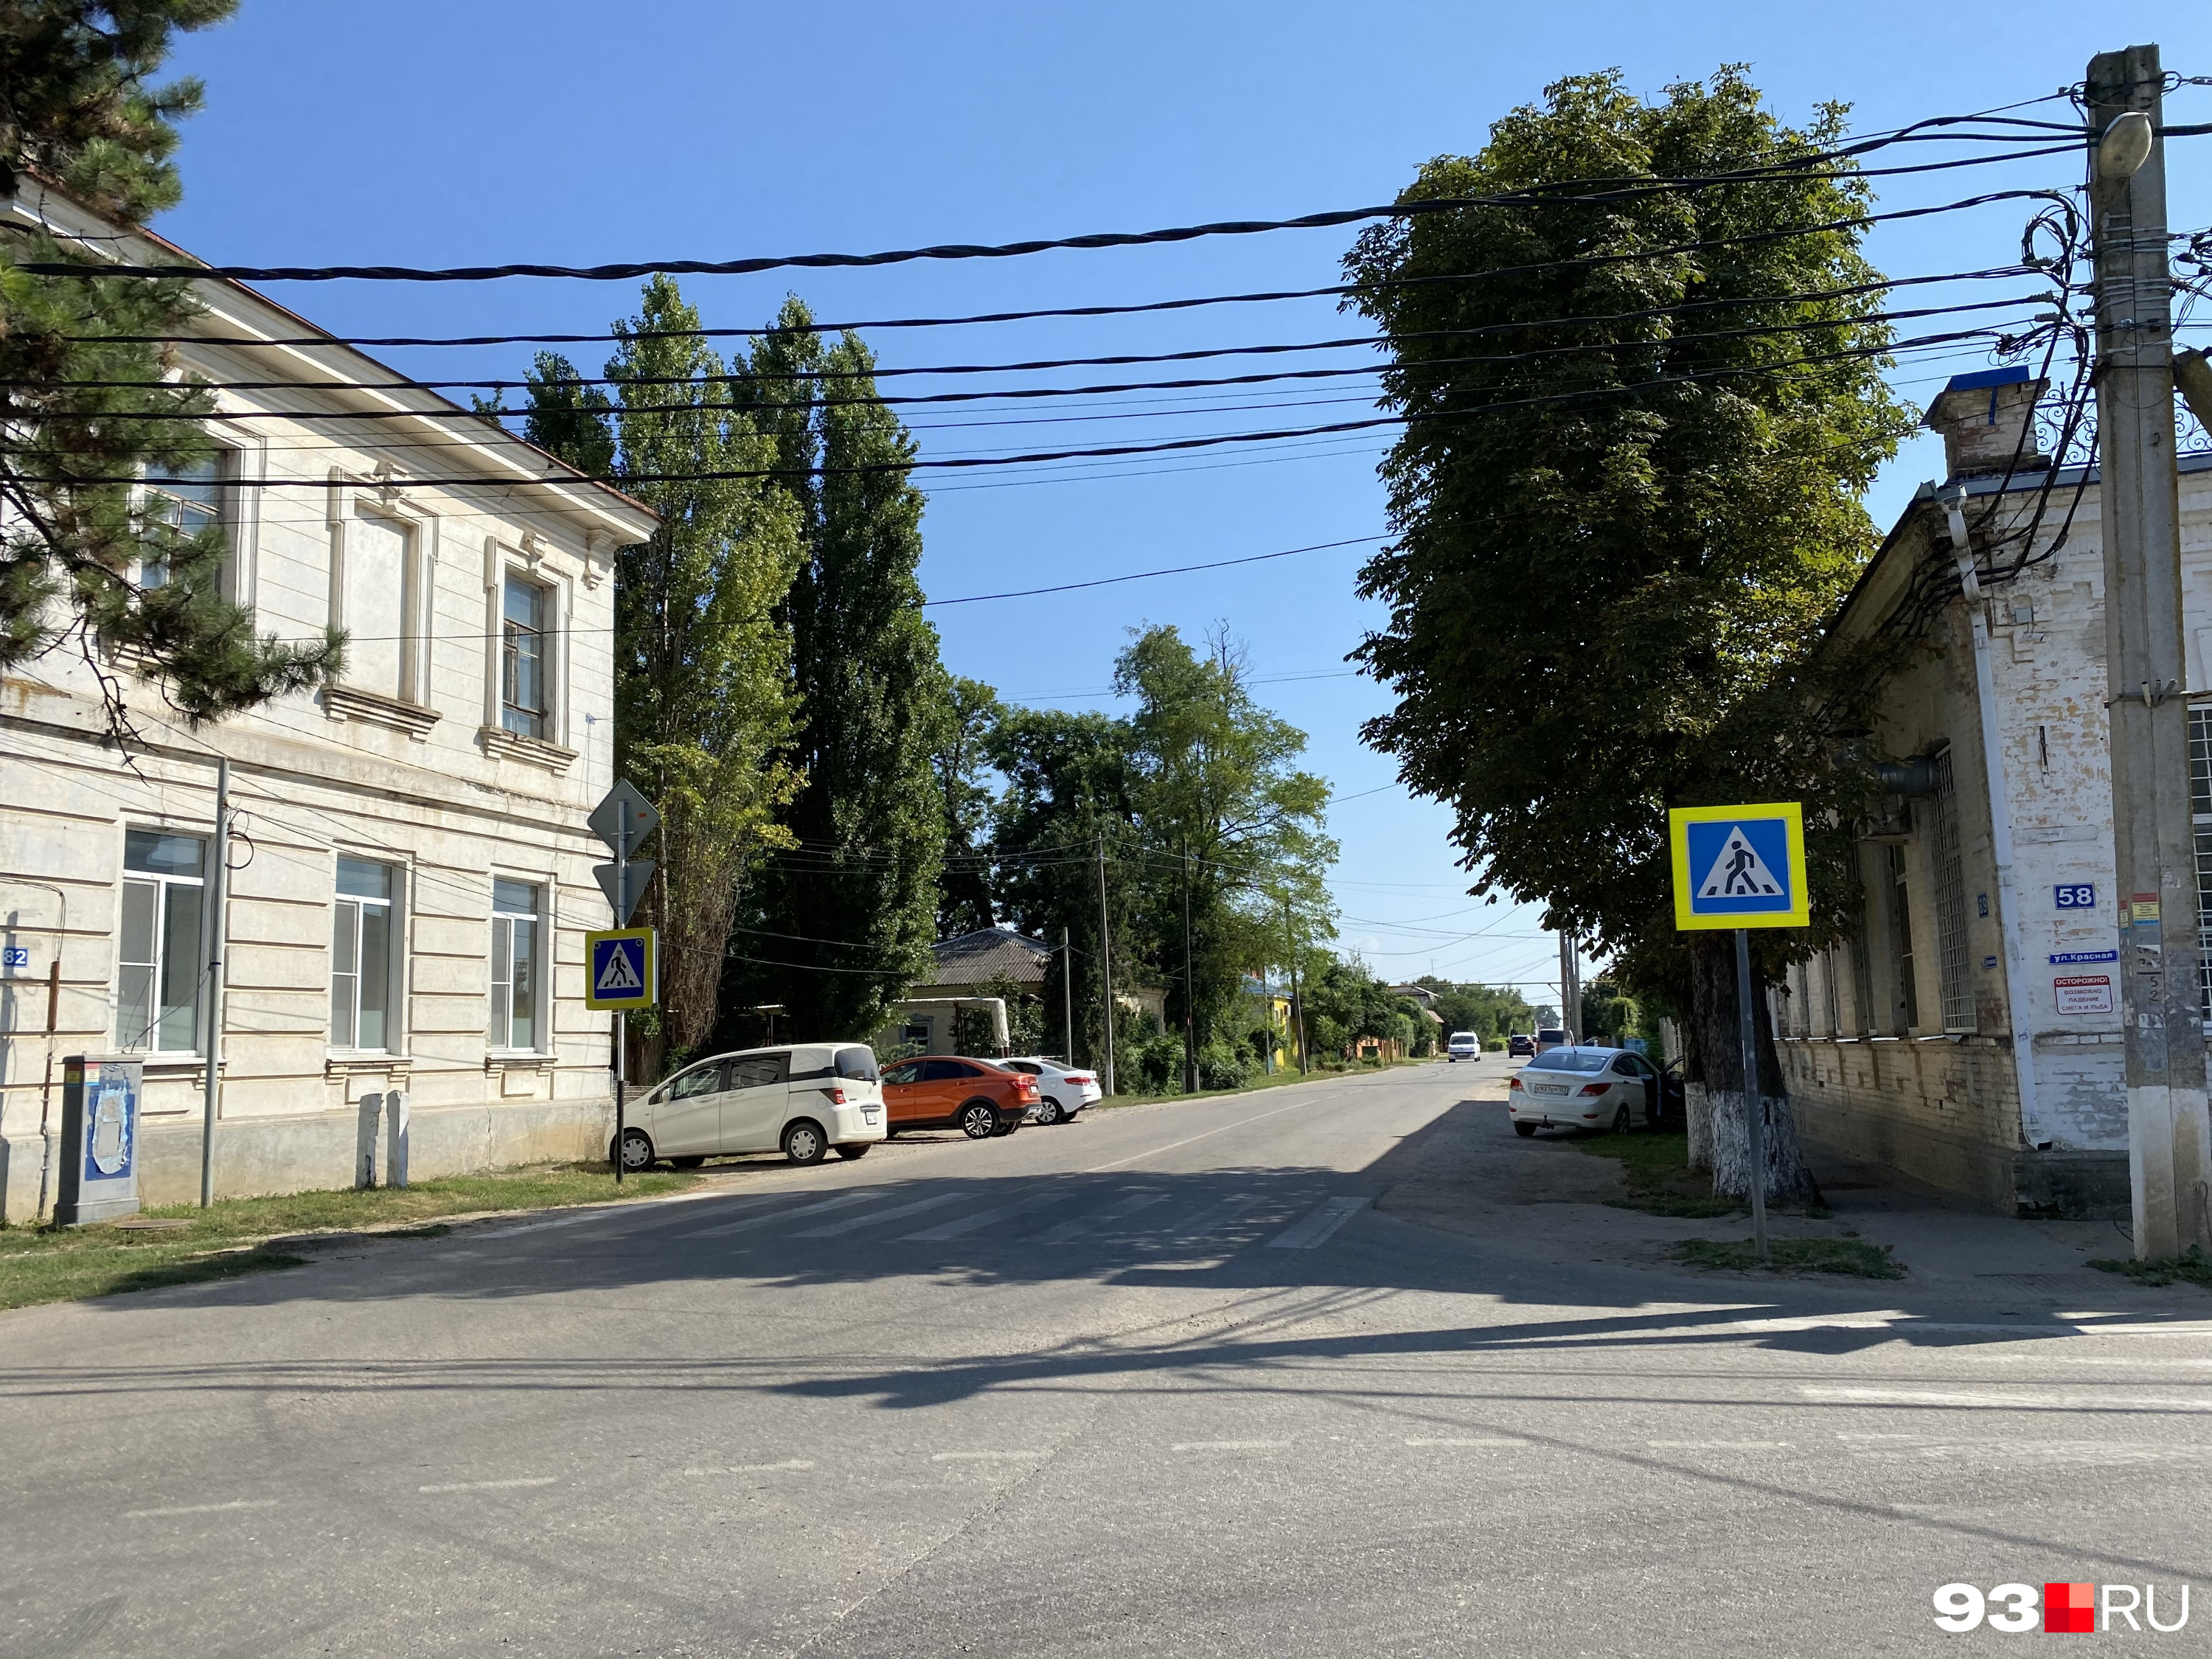 Улицы в станице Старокорсунской